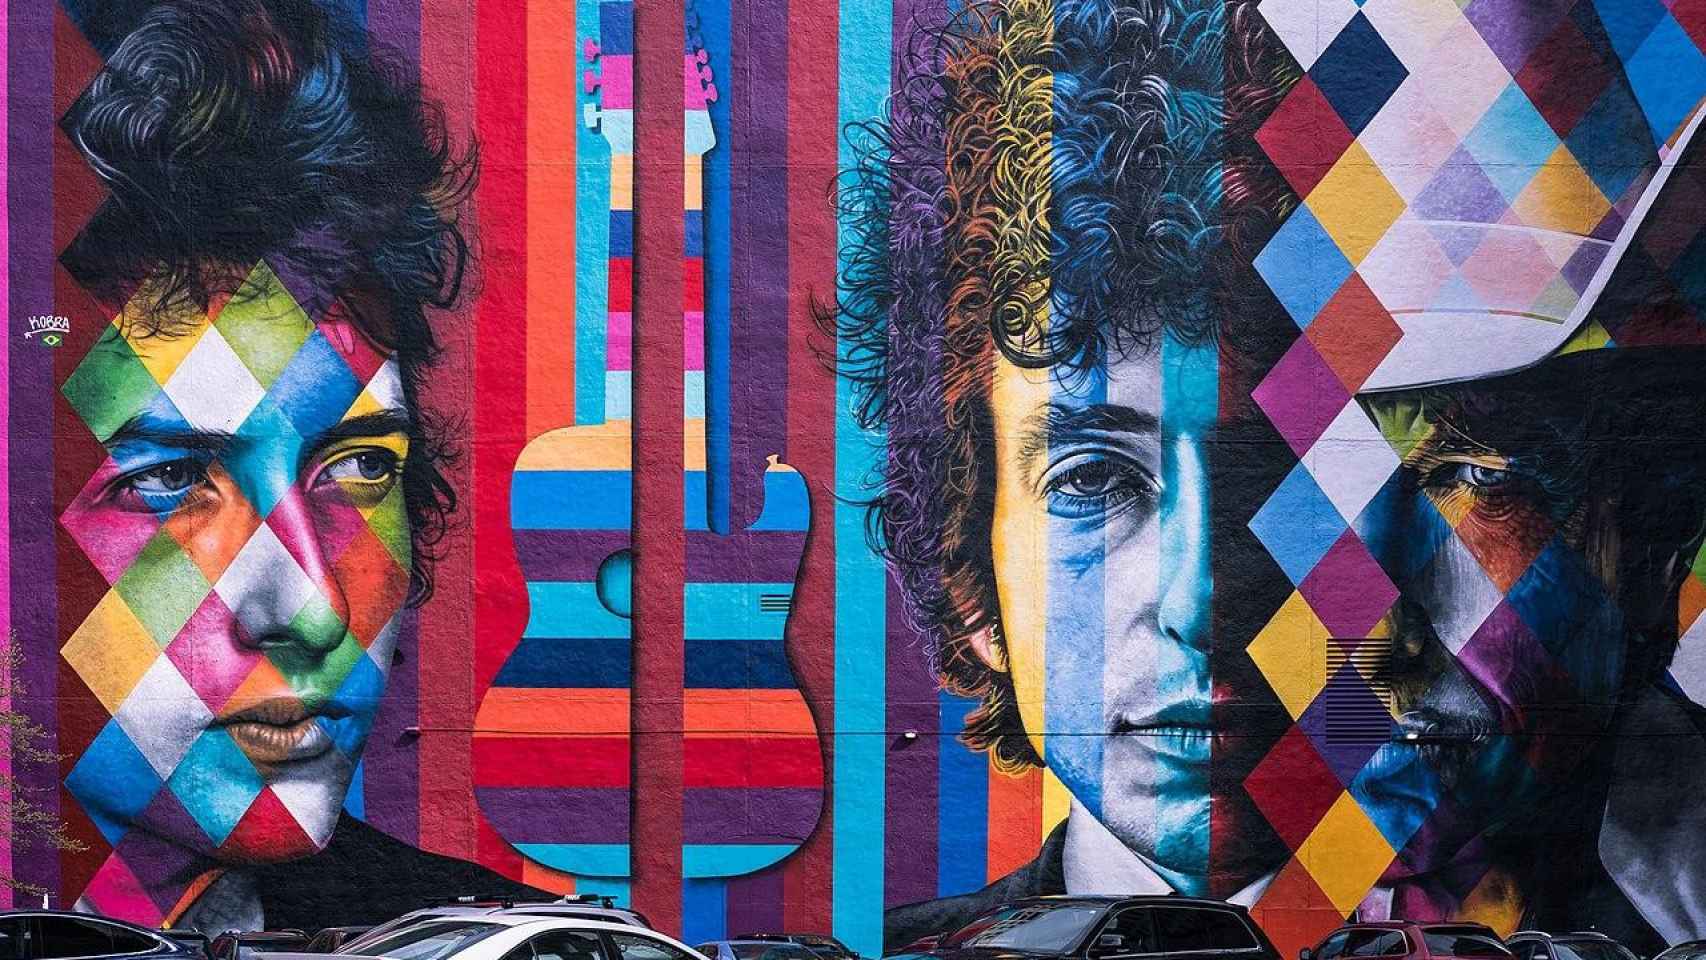 Mural de Bob Dylan en Minneapolis, obra de Eduardo Kobra